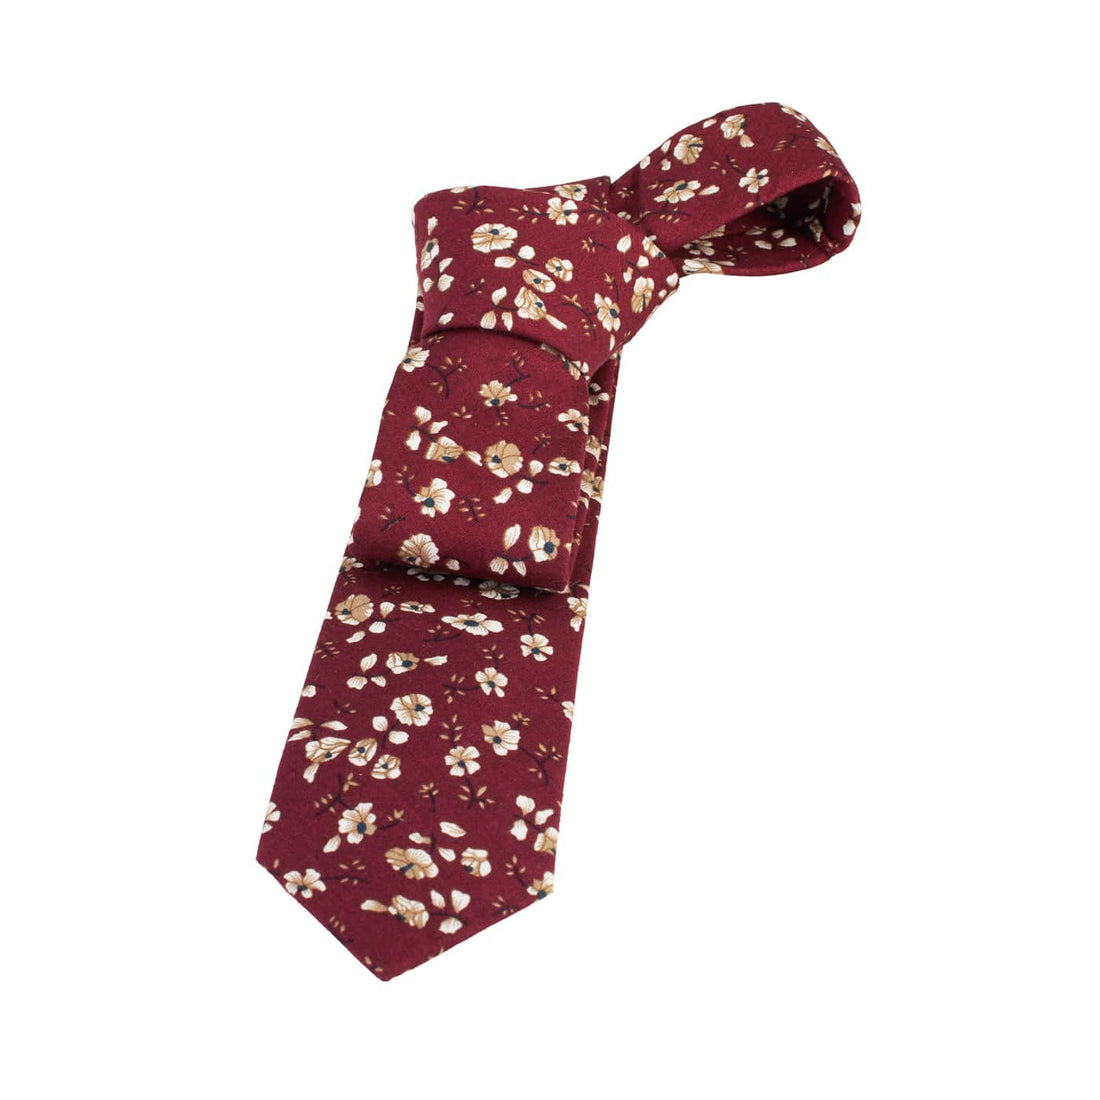 Burgundy Floral Cotton Tie